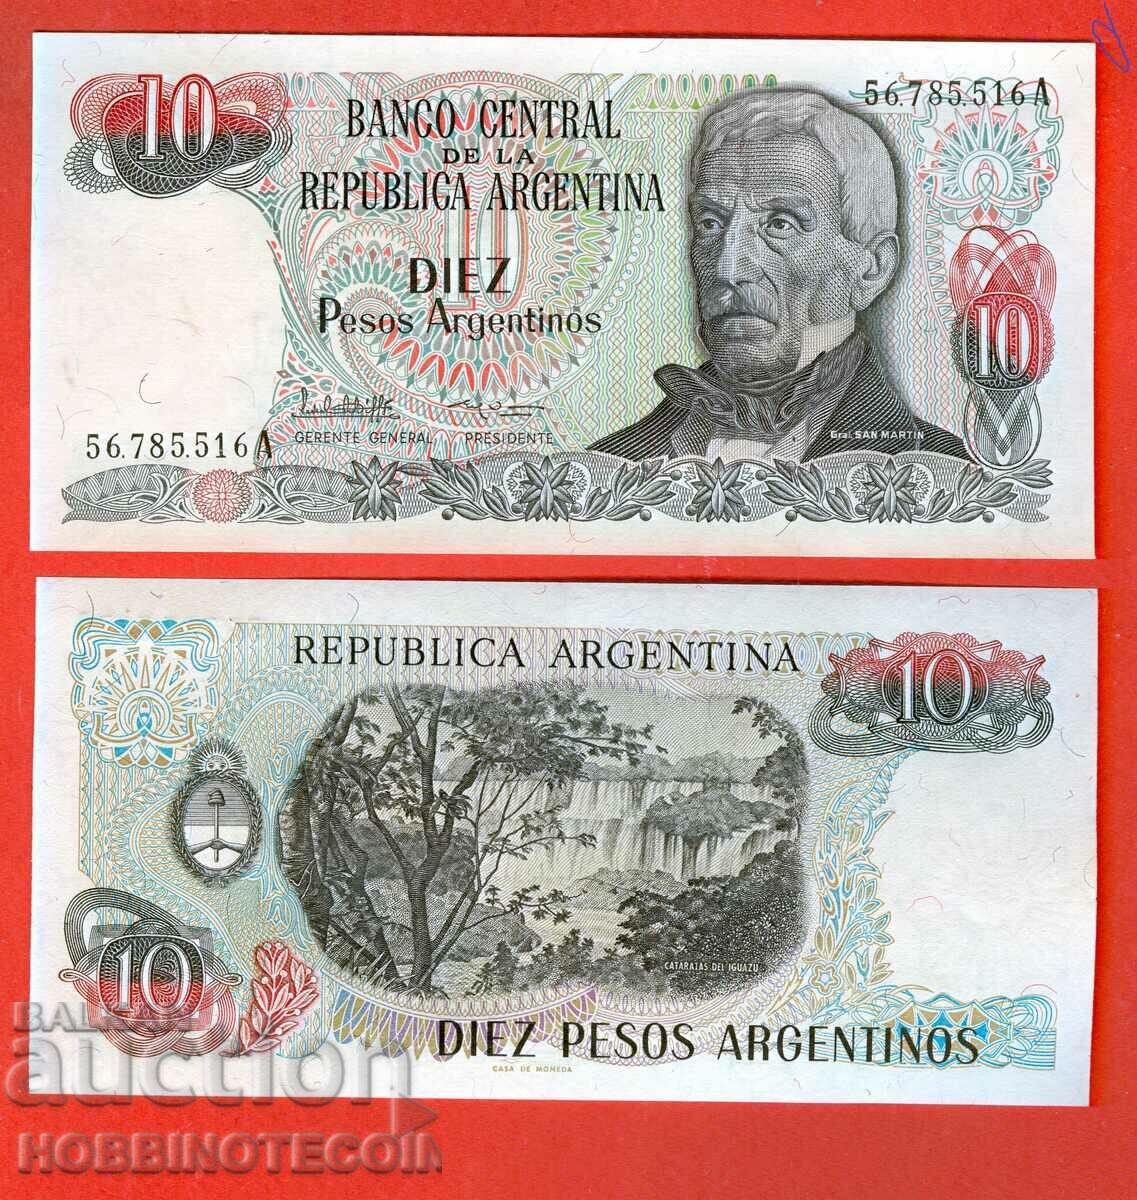 ARGENTINA ARGENTINA 10 Peso emisiune - emisiune 1985 NOU UNC